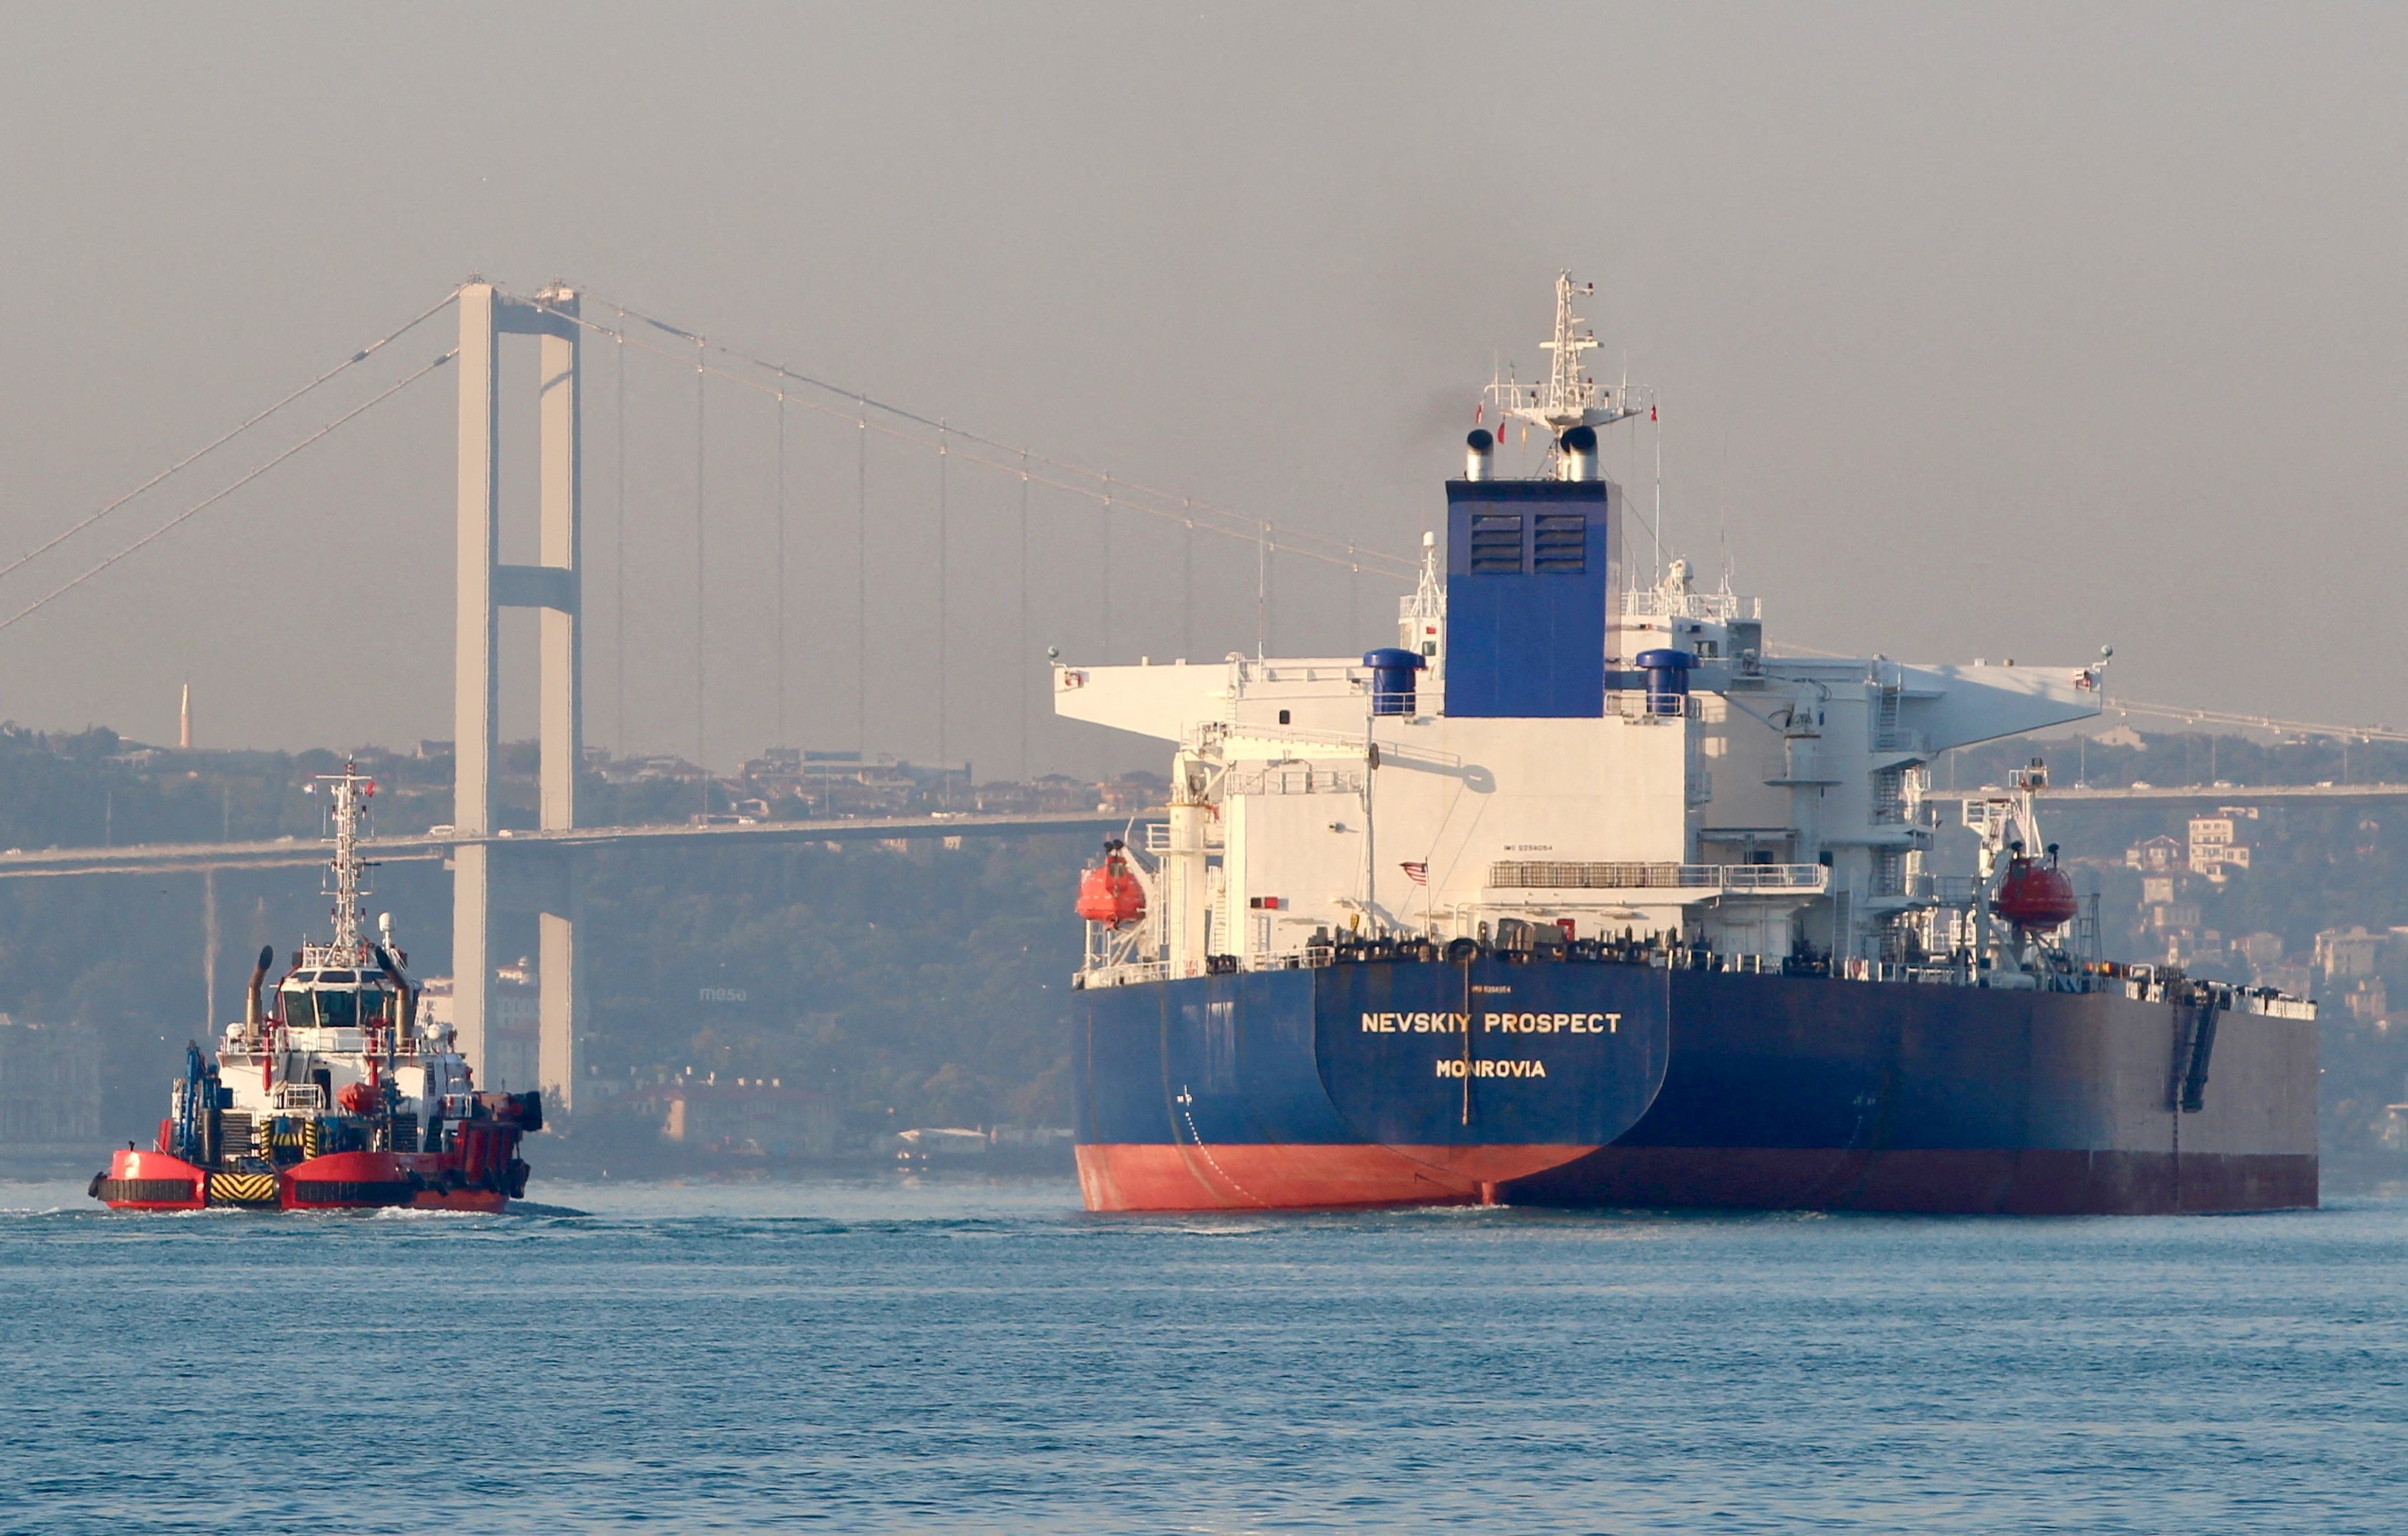 Нефтяной танкер «Невский проспект», принадлежащий ведущей танкерной группе России «Совкомфлот», пересекает Босфор в Стамбуле, Турция.